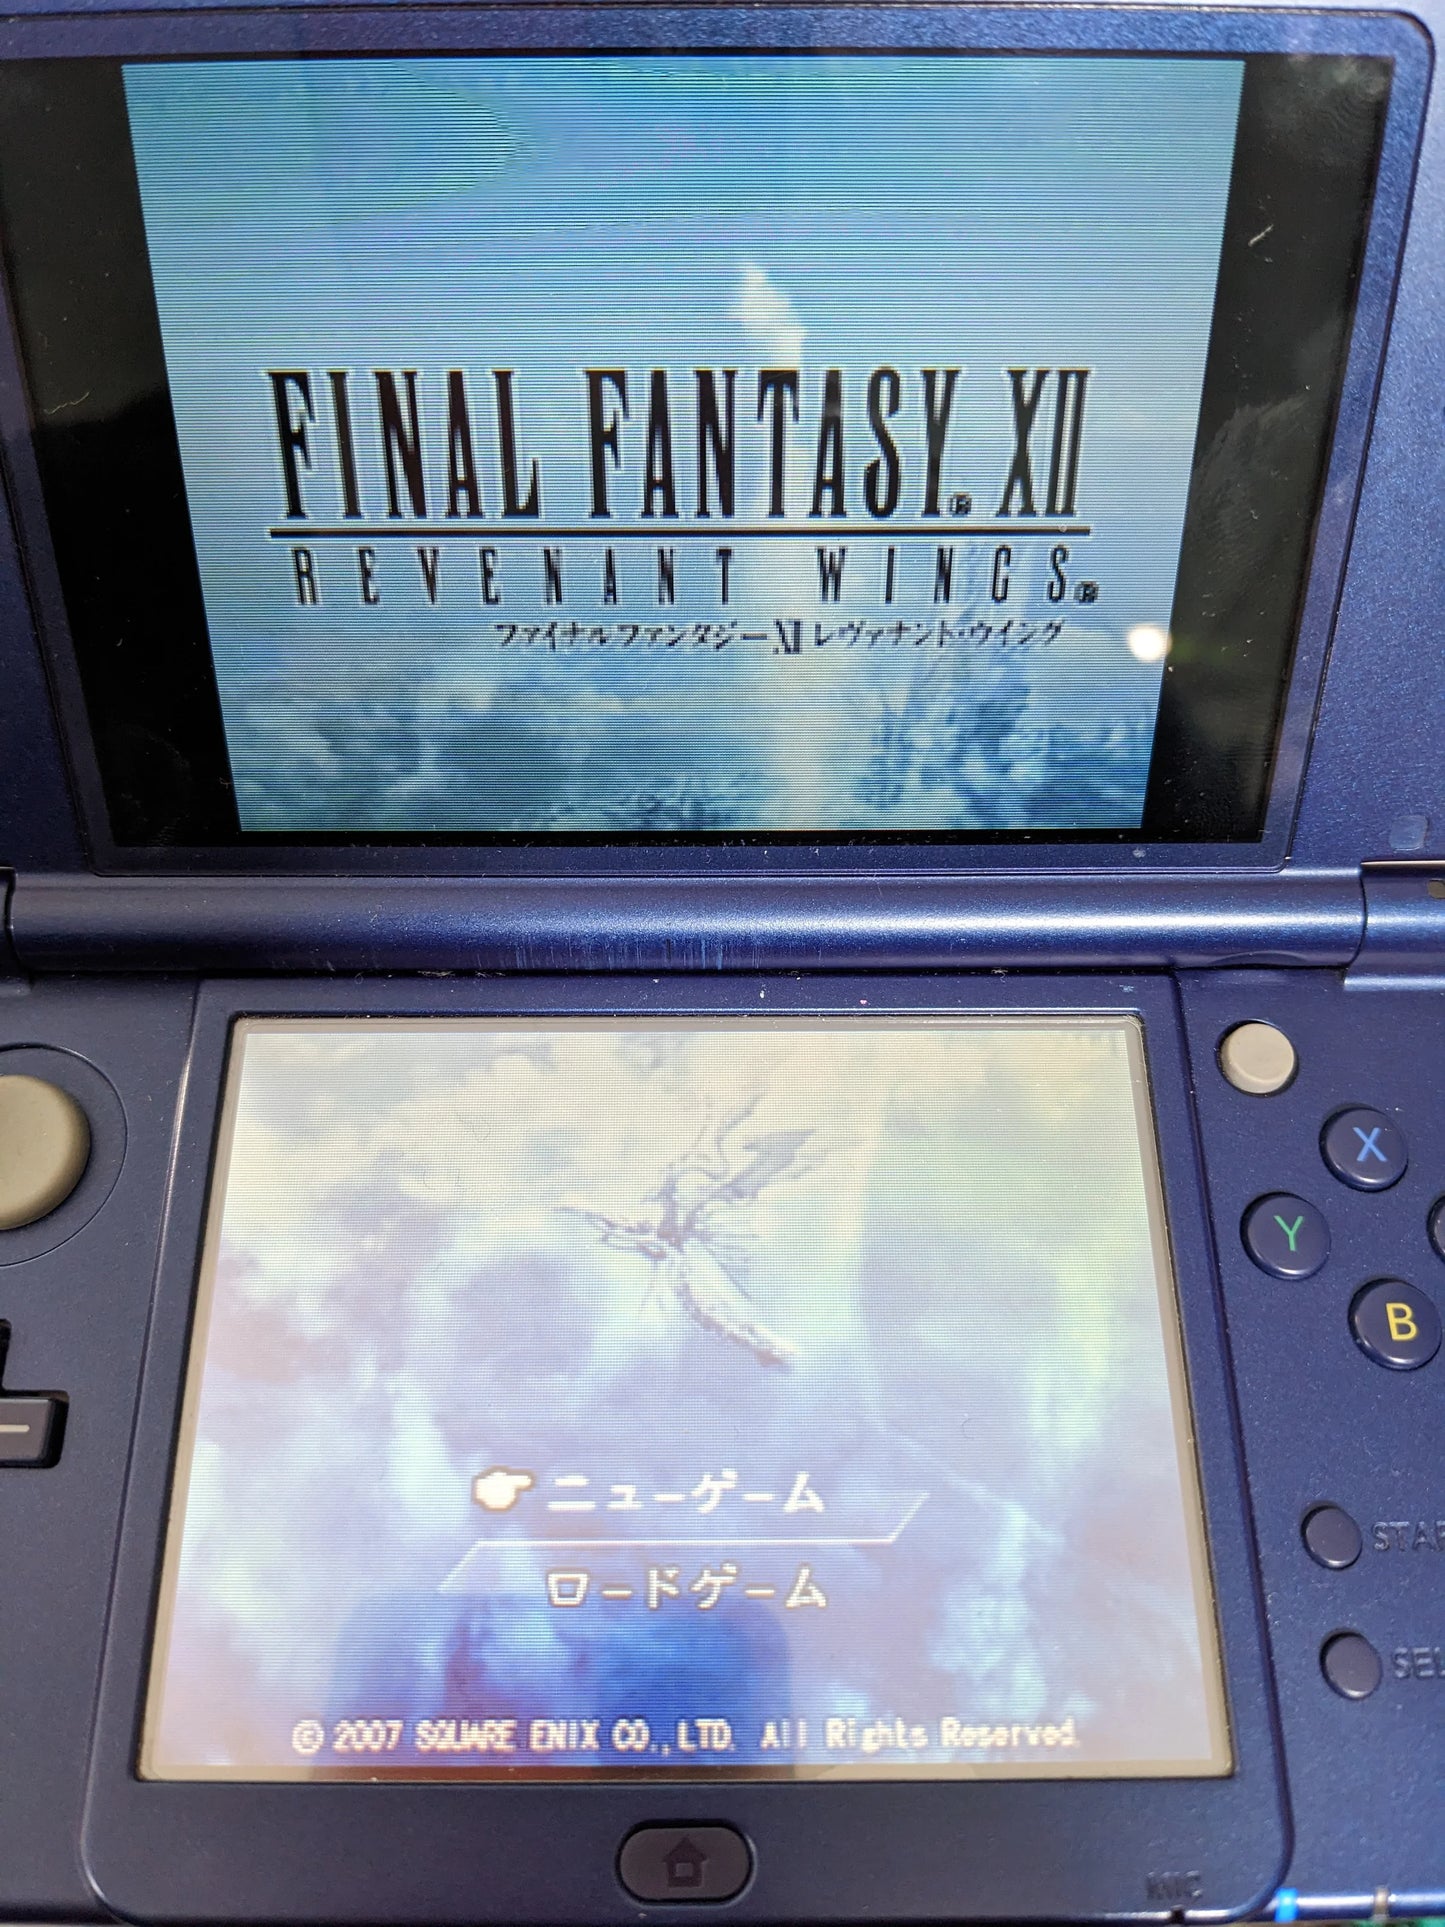 Final Fantasy XII : Revenant Wings